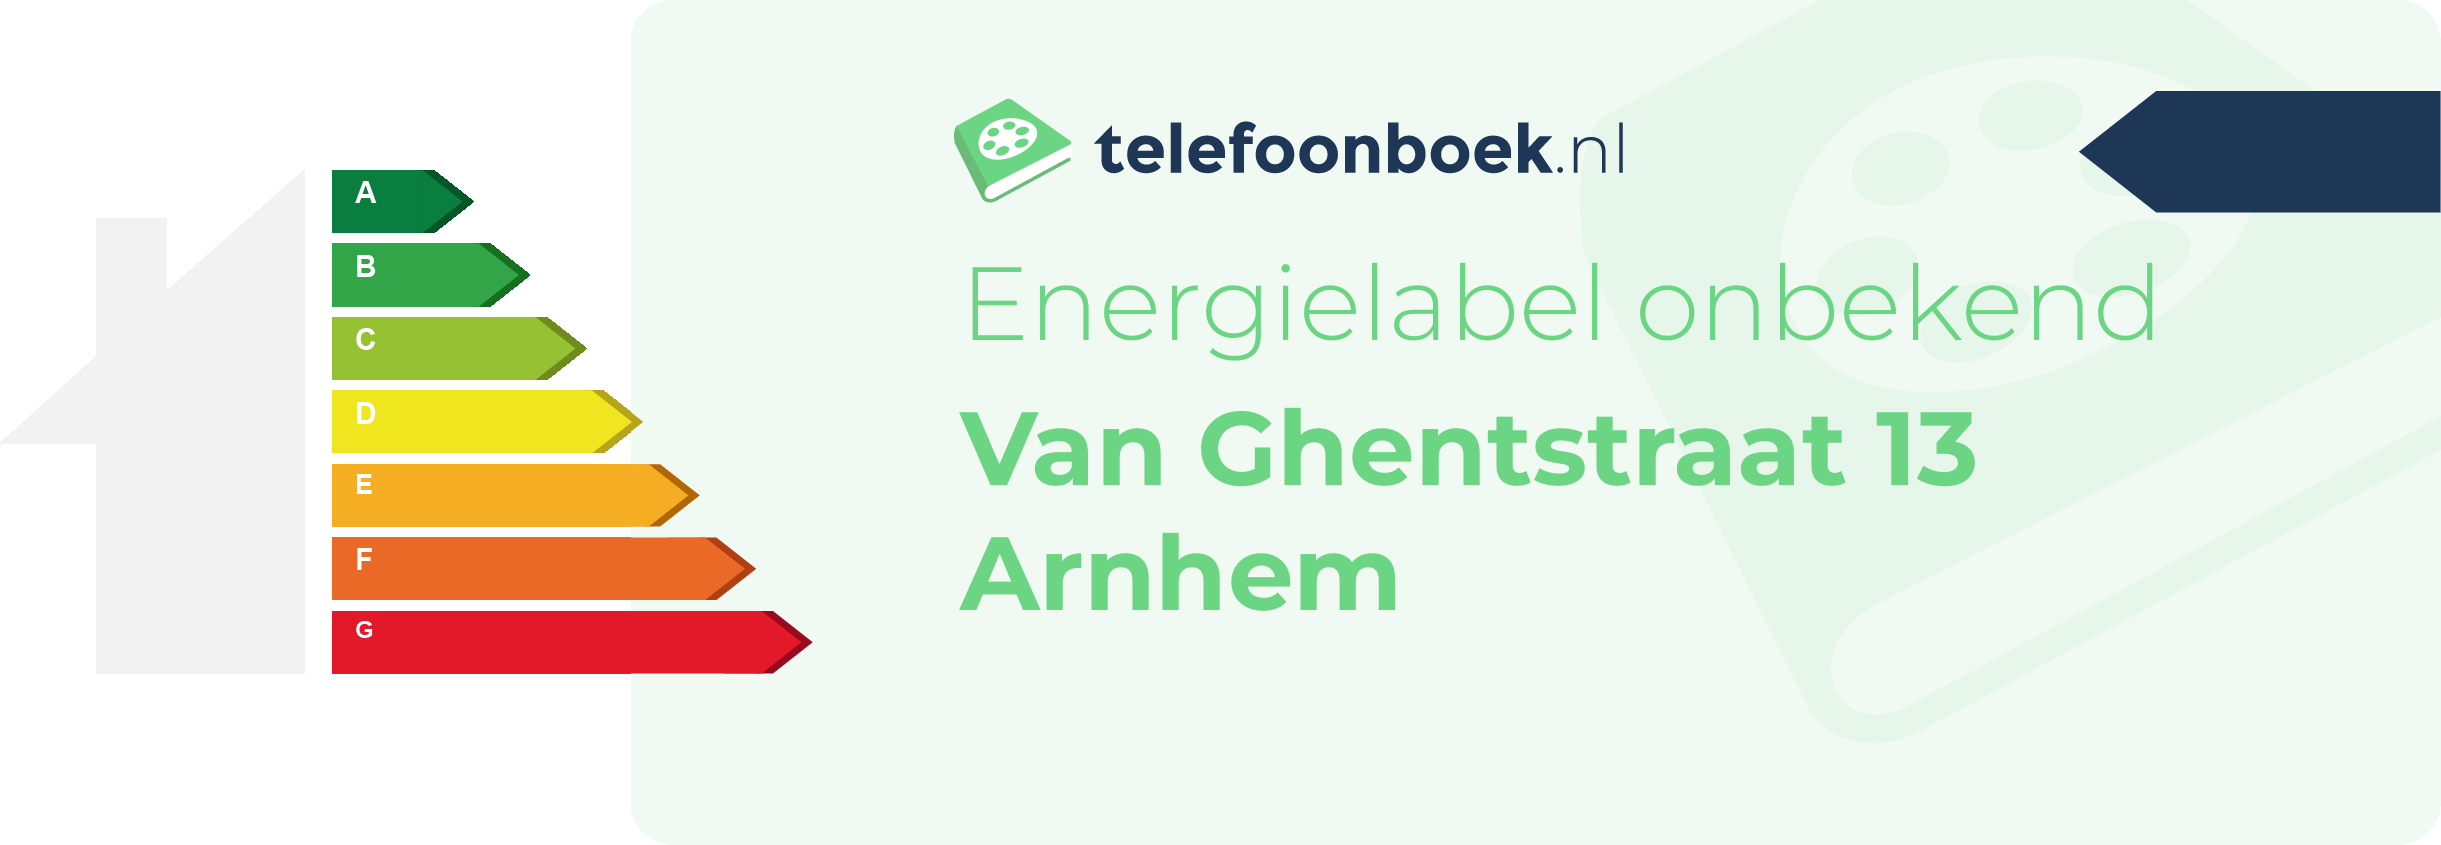 Energielabel Van Ghentstraat 13 Arnhem